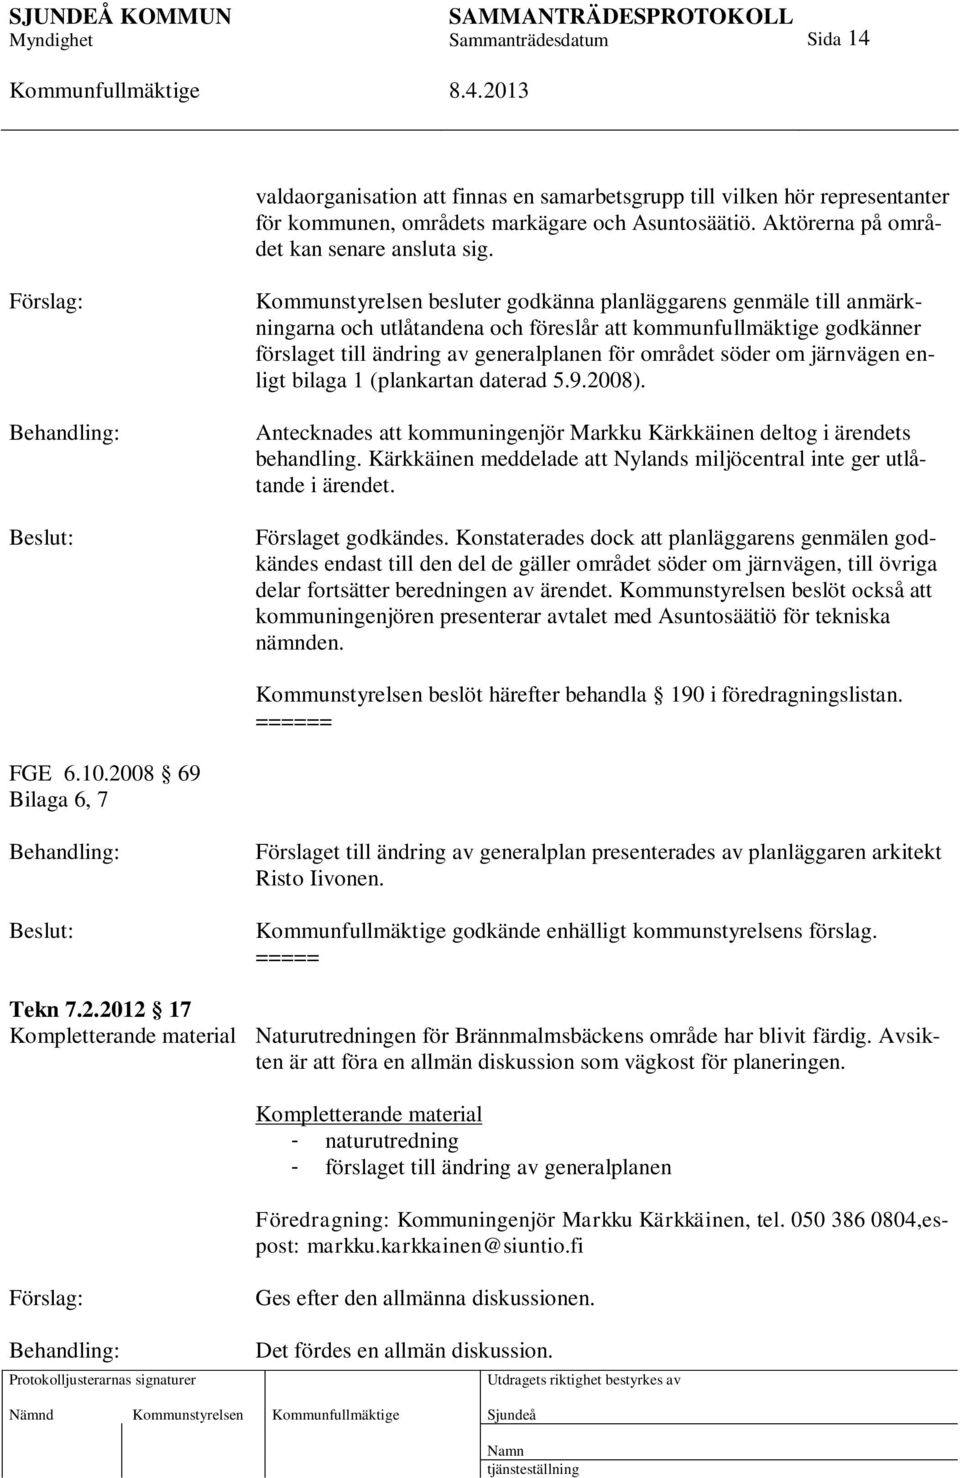 området söder om järnvägen enligt bilaga 1 (plankartan daterad 5.9.2008). Antecknades att kommuningenjör Markku Kärkkäinen deltog i ärendets behandling.